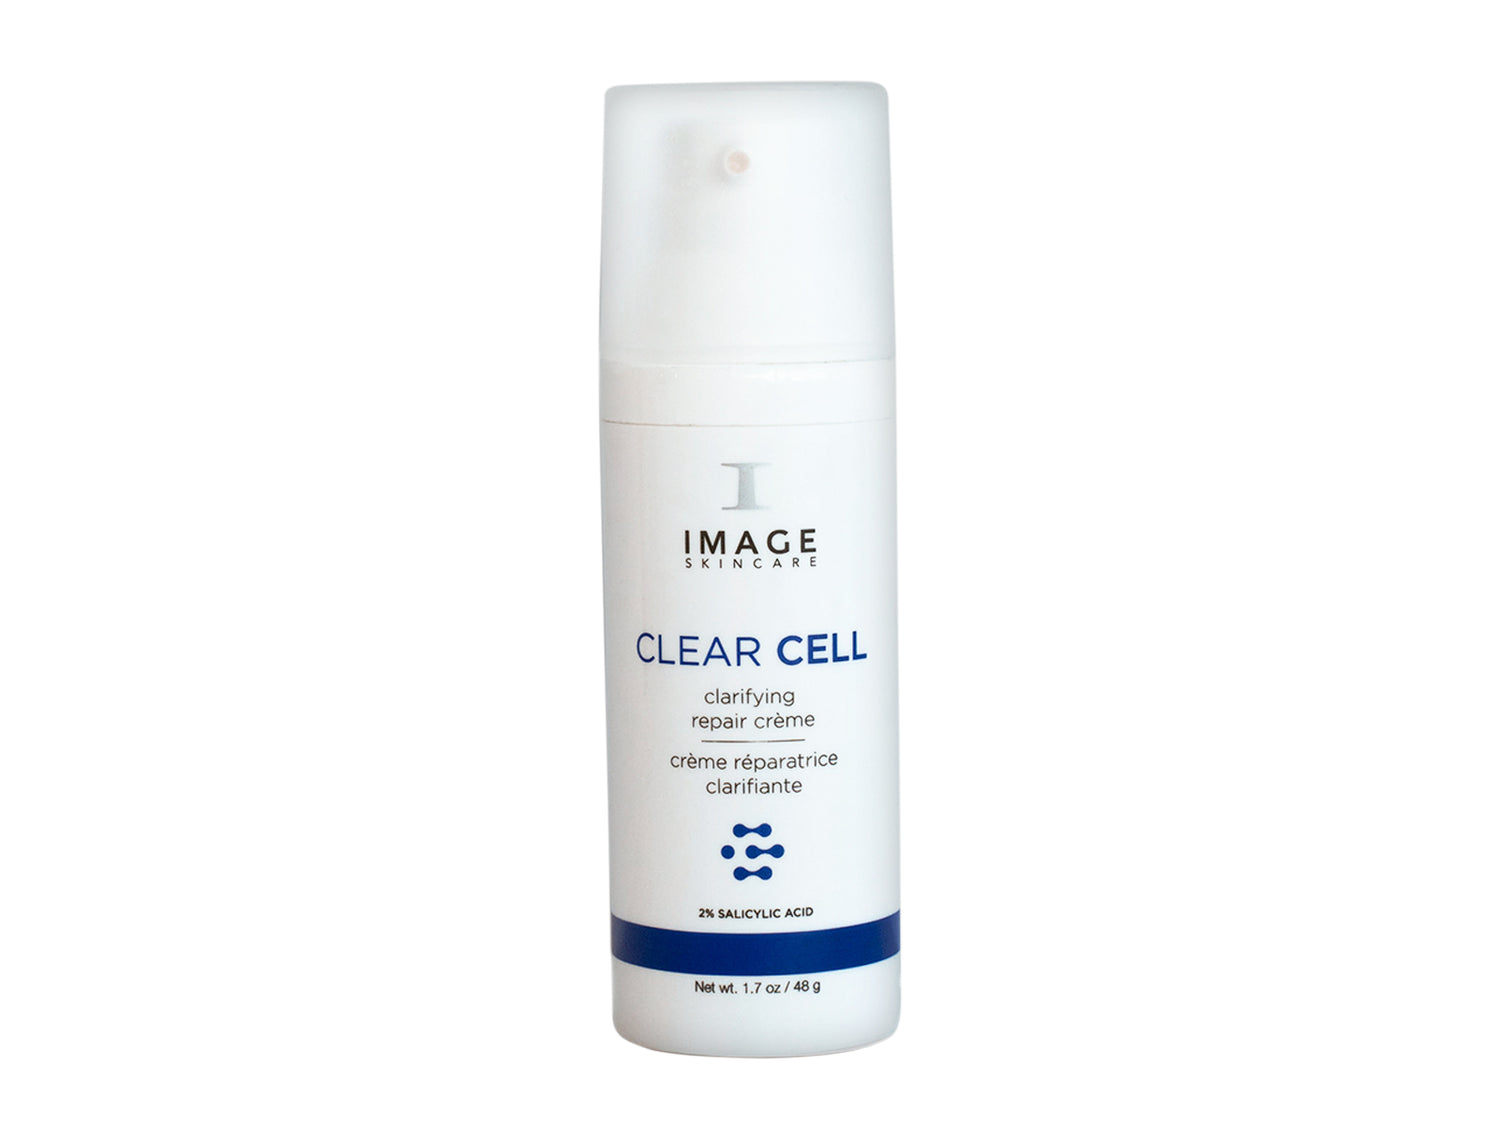 Clear cell clarifying repair crème